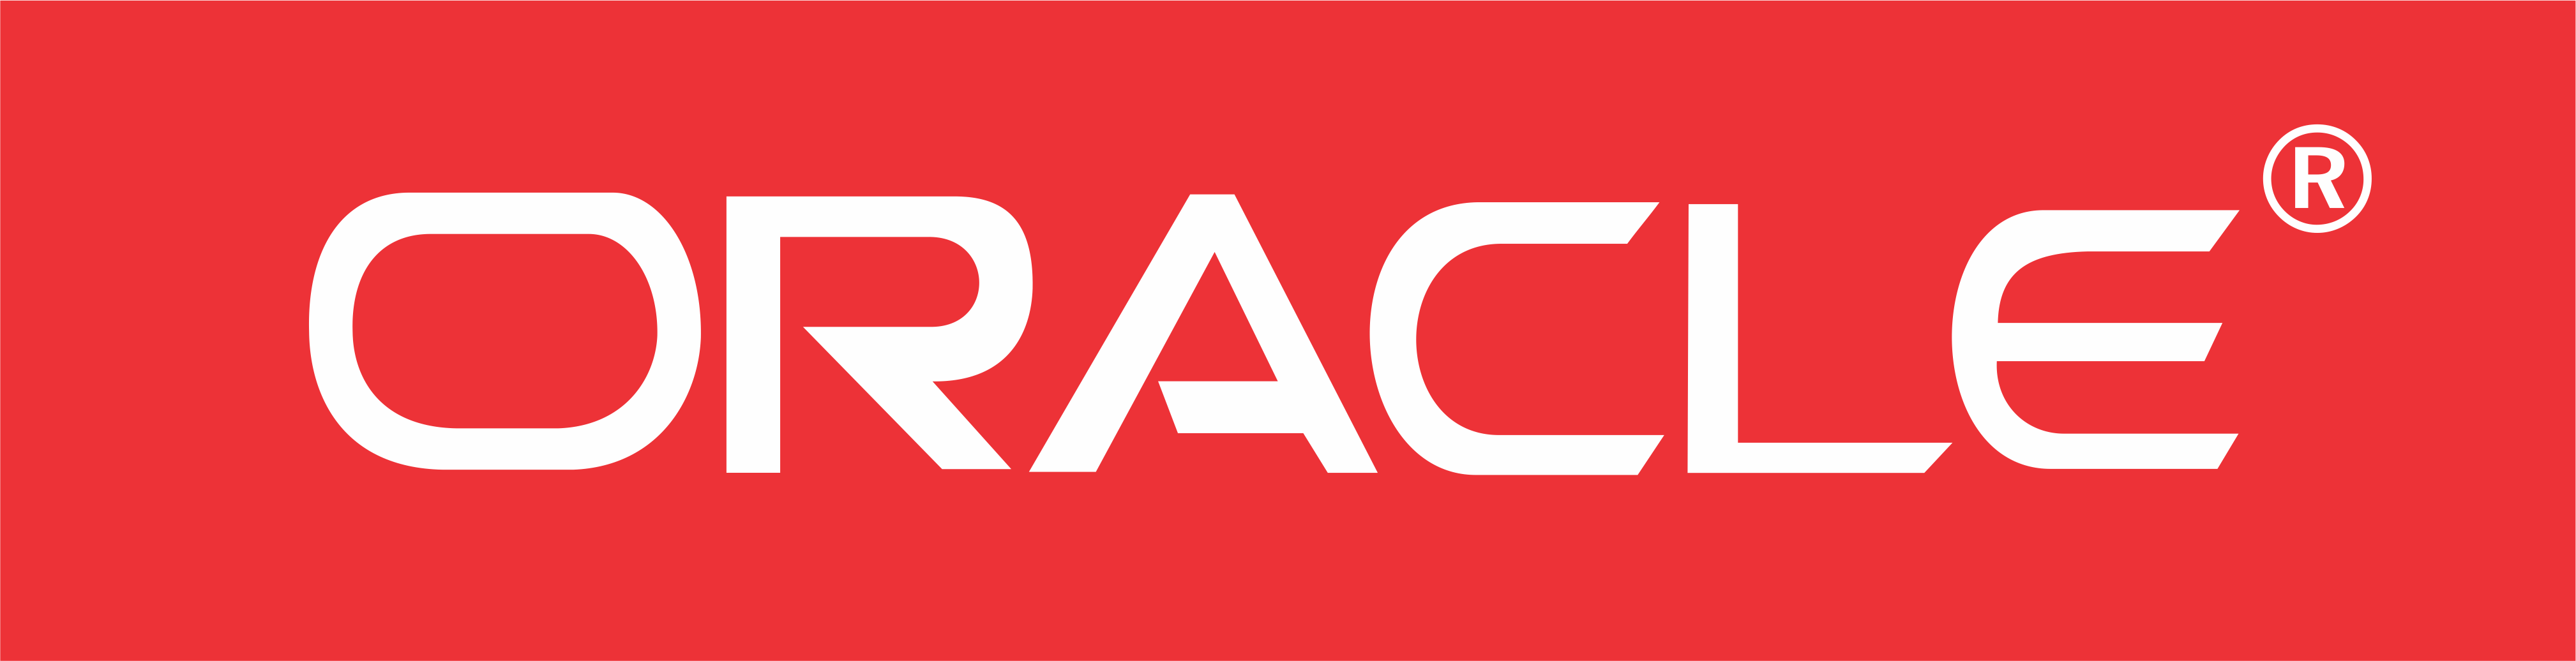 Gestion des entreprises : Oracle suggère les applis mobiles